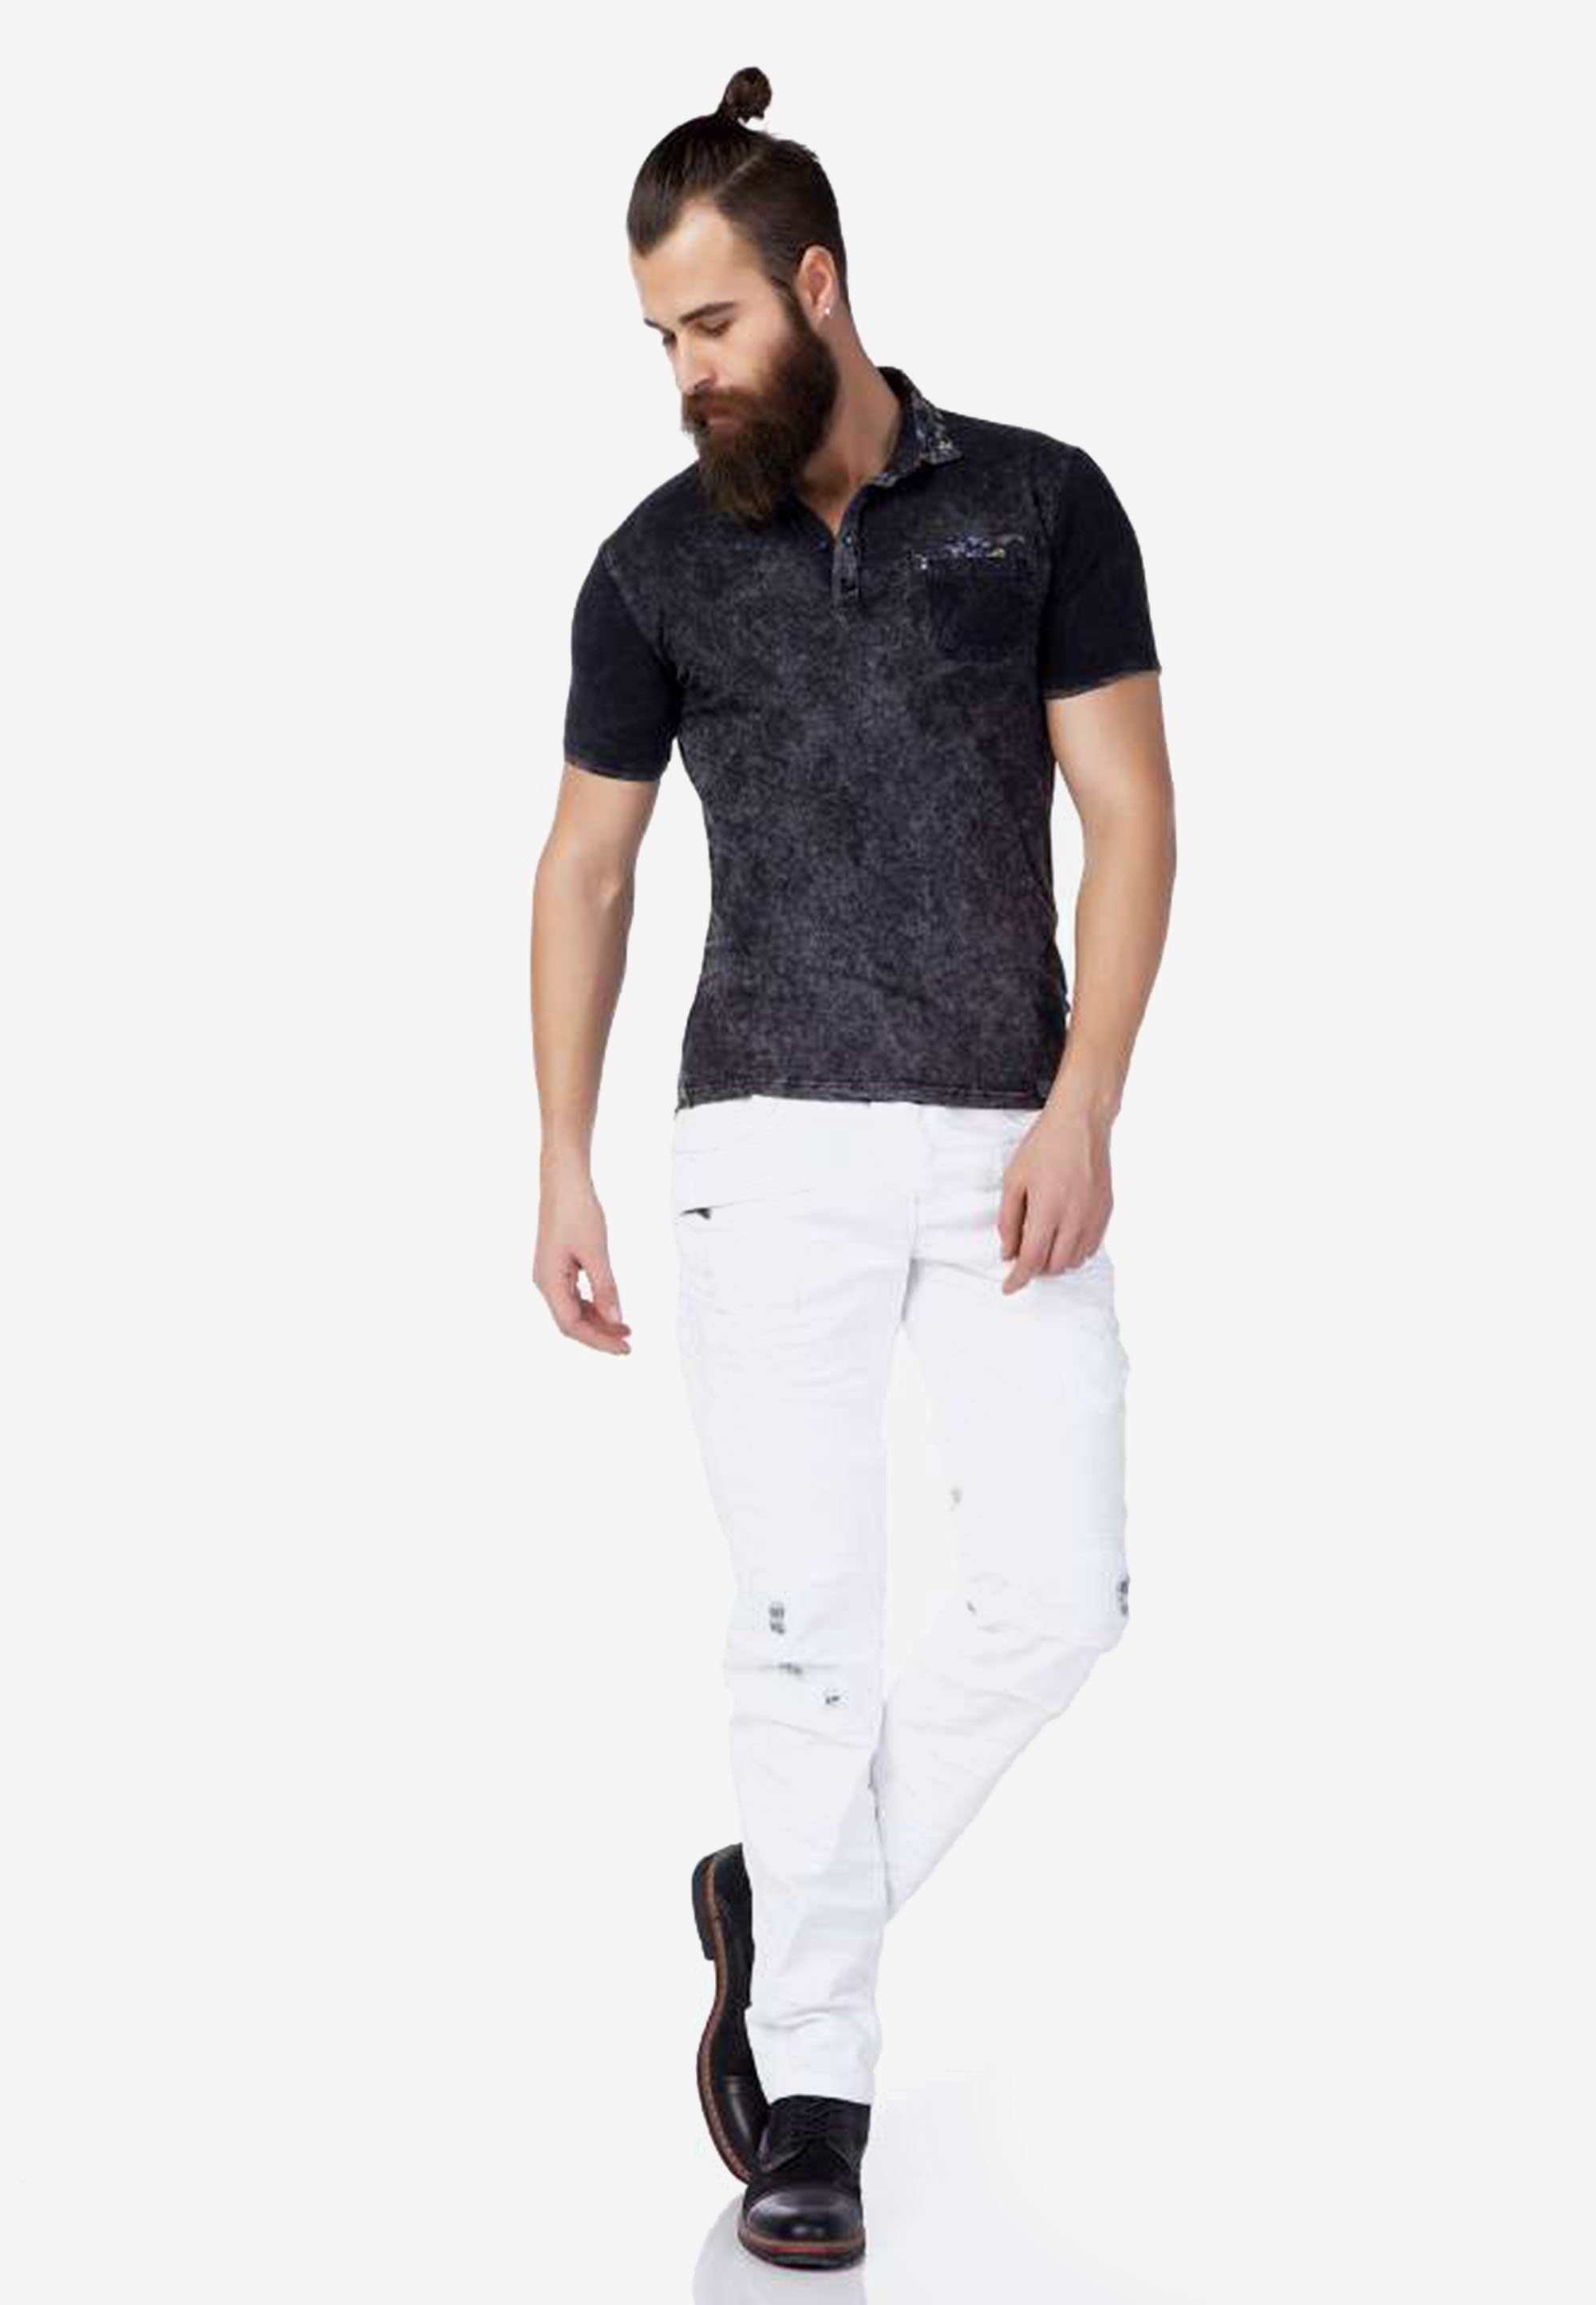 Baxx anthrazit-schwarz Color-Blocking-Stil im Cipo & Poloshirt